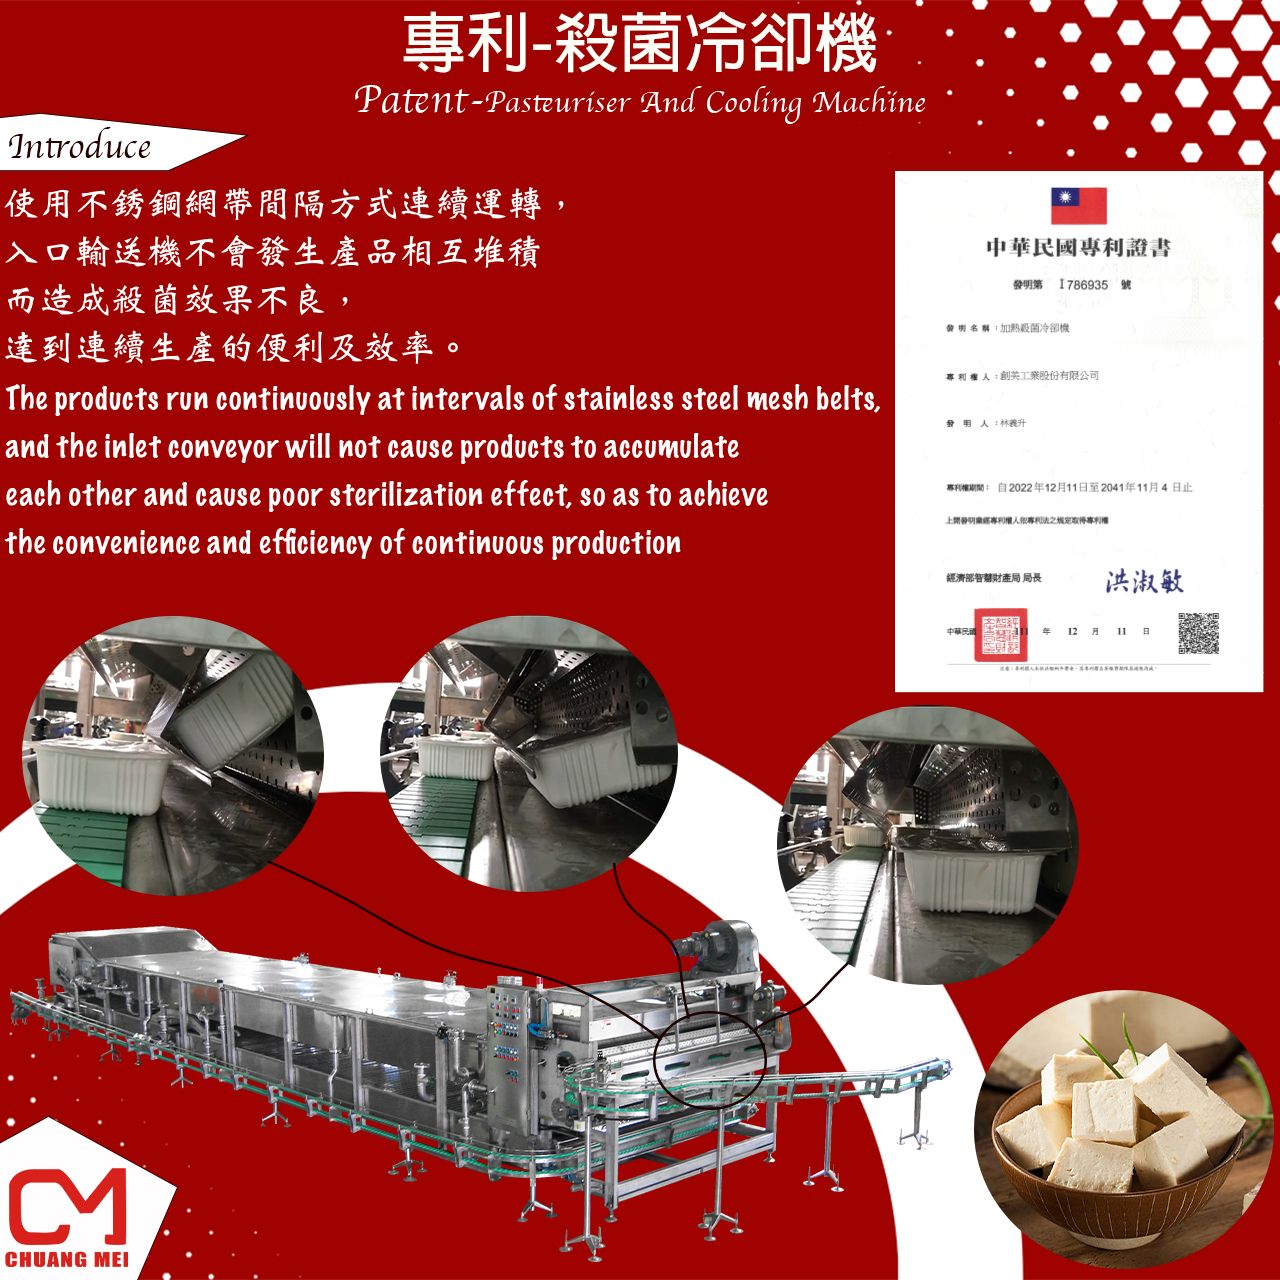 Mesin pasteurisasi dan pendingin yang dirancang dan dikembangkan oleh CHUANG MEI.